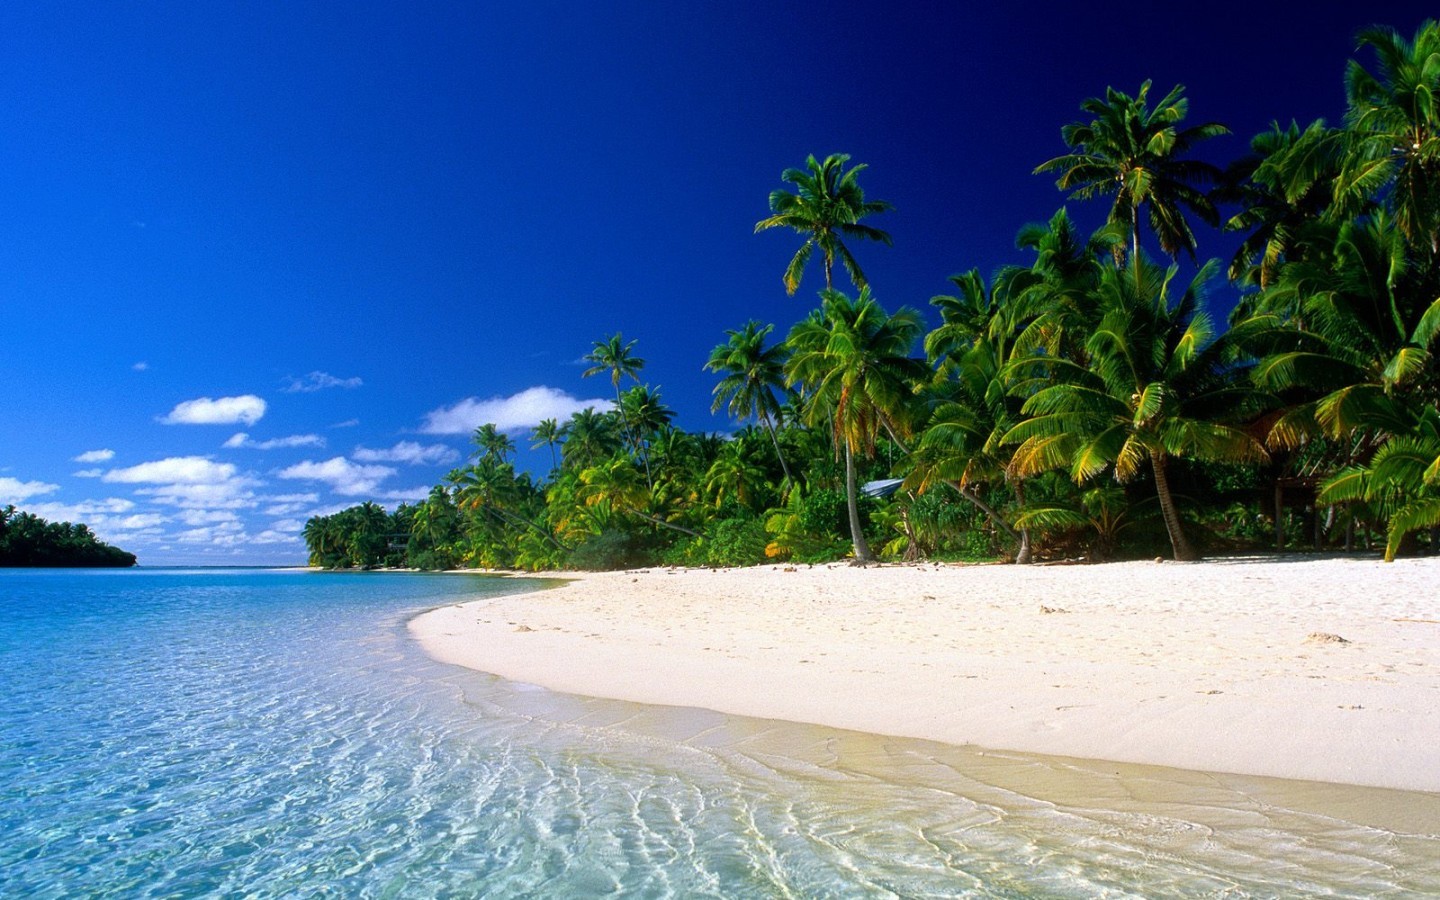 Скачать обои бесплатно Пляж, Облака, Песок, Пальмы, Море, Пейзаж картинка на рабочий стол ПК